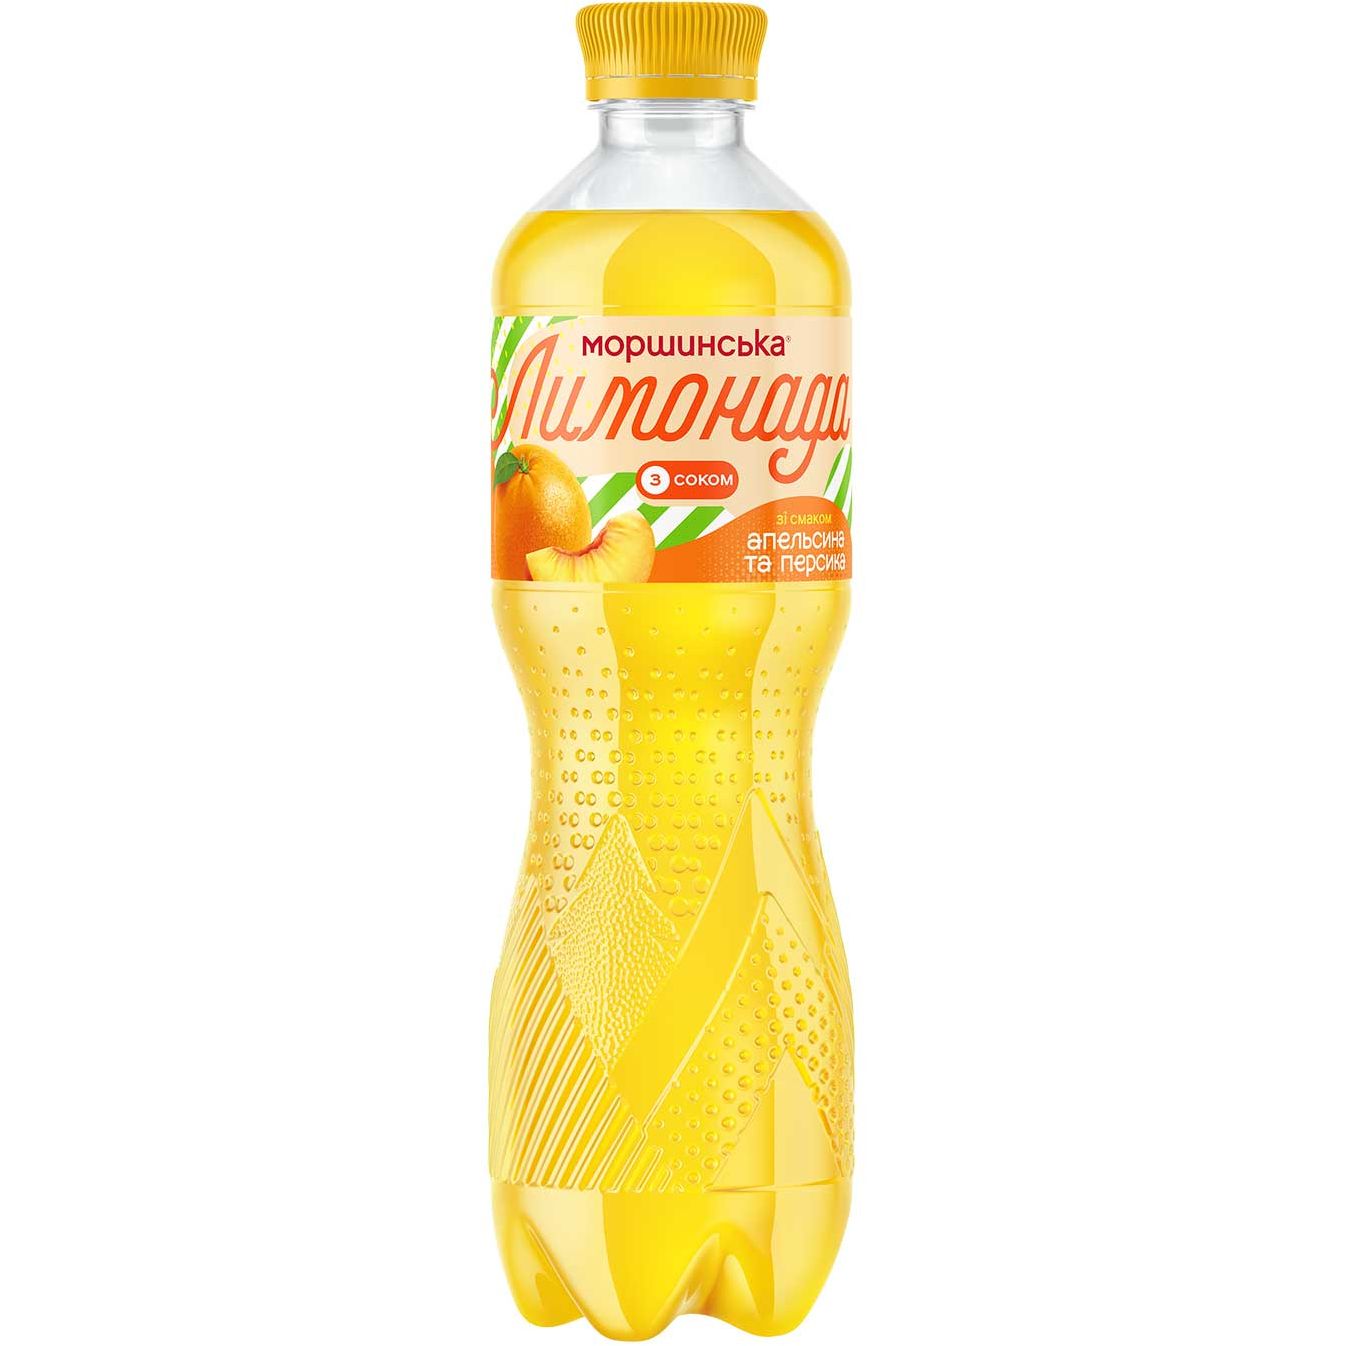 Напиток Моршинская Лимонада Апельсин-Персик среднегазированный 0.5 л - фото 1